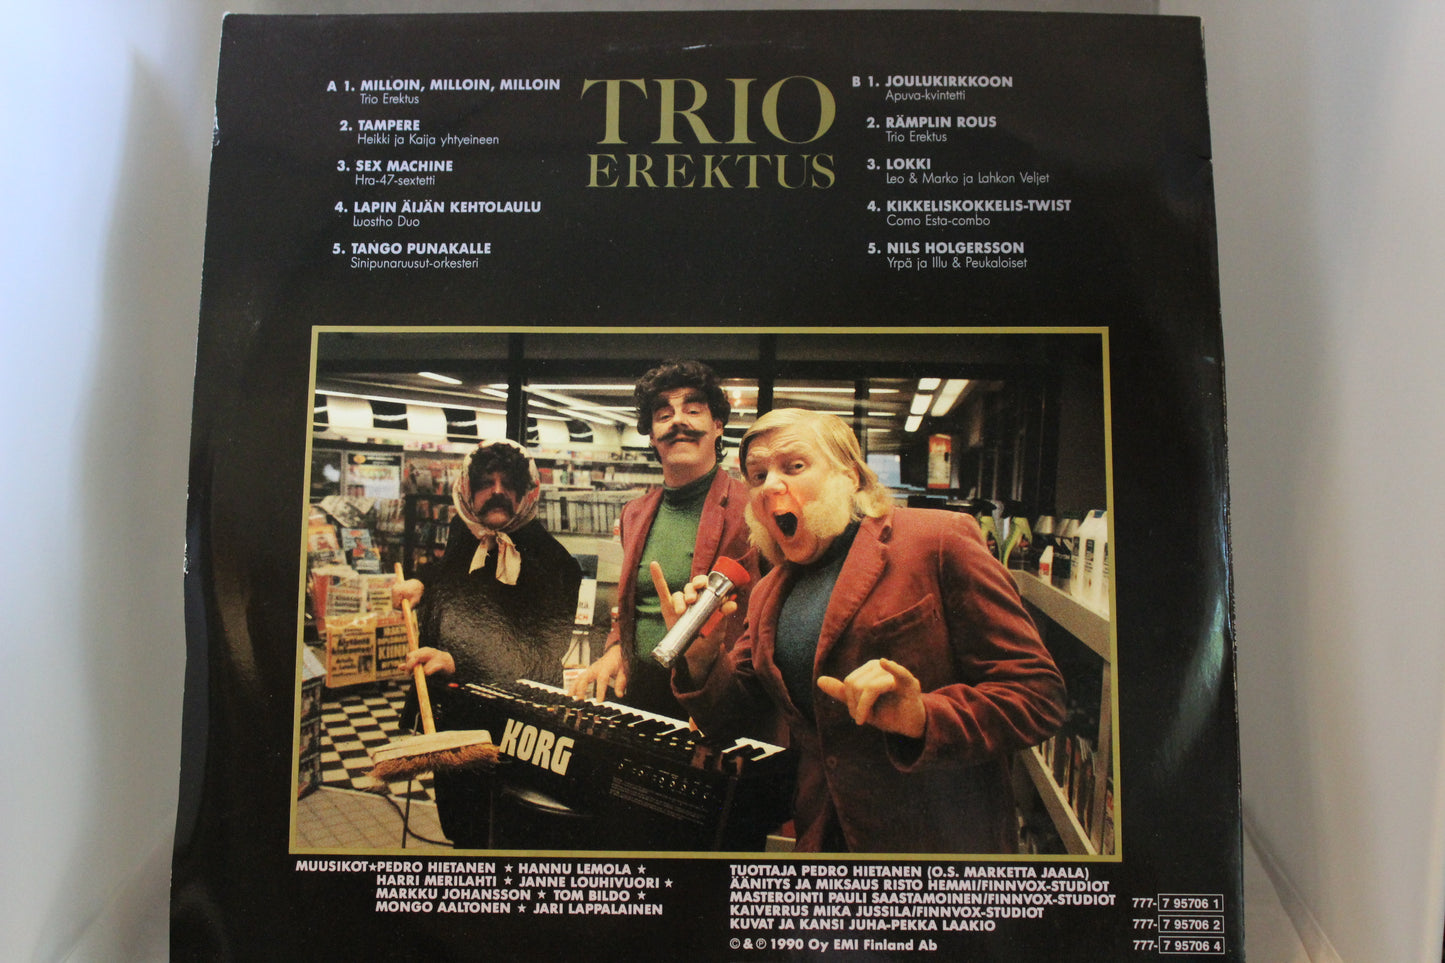 Trio Erektus Kultalevy 1 lp-levy